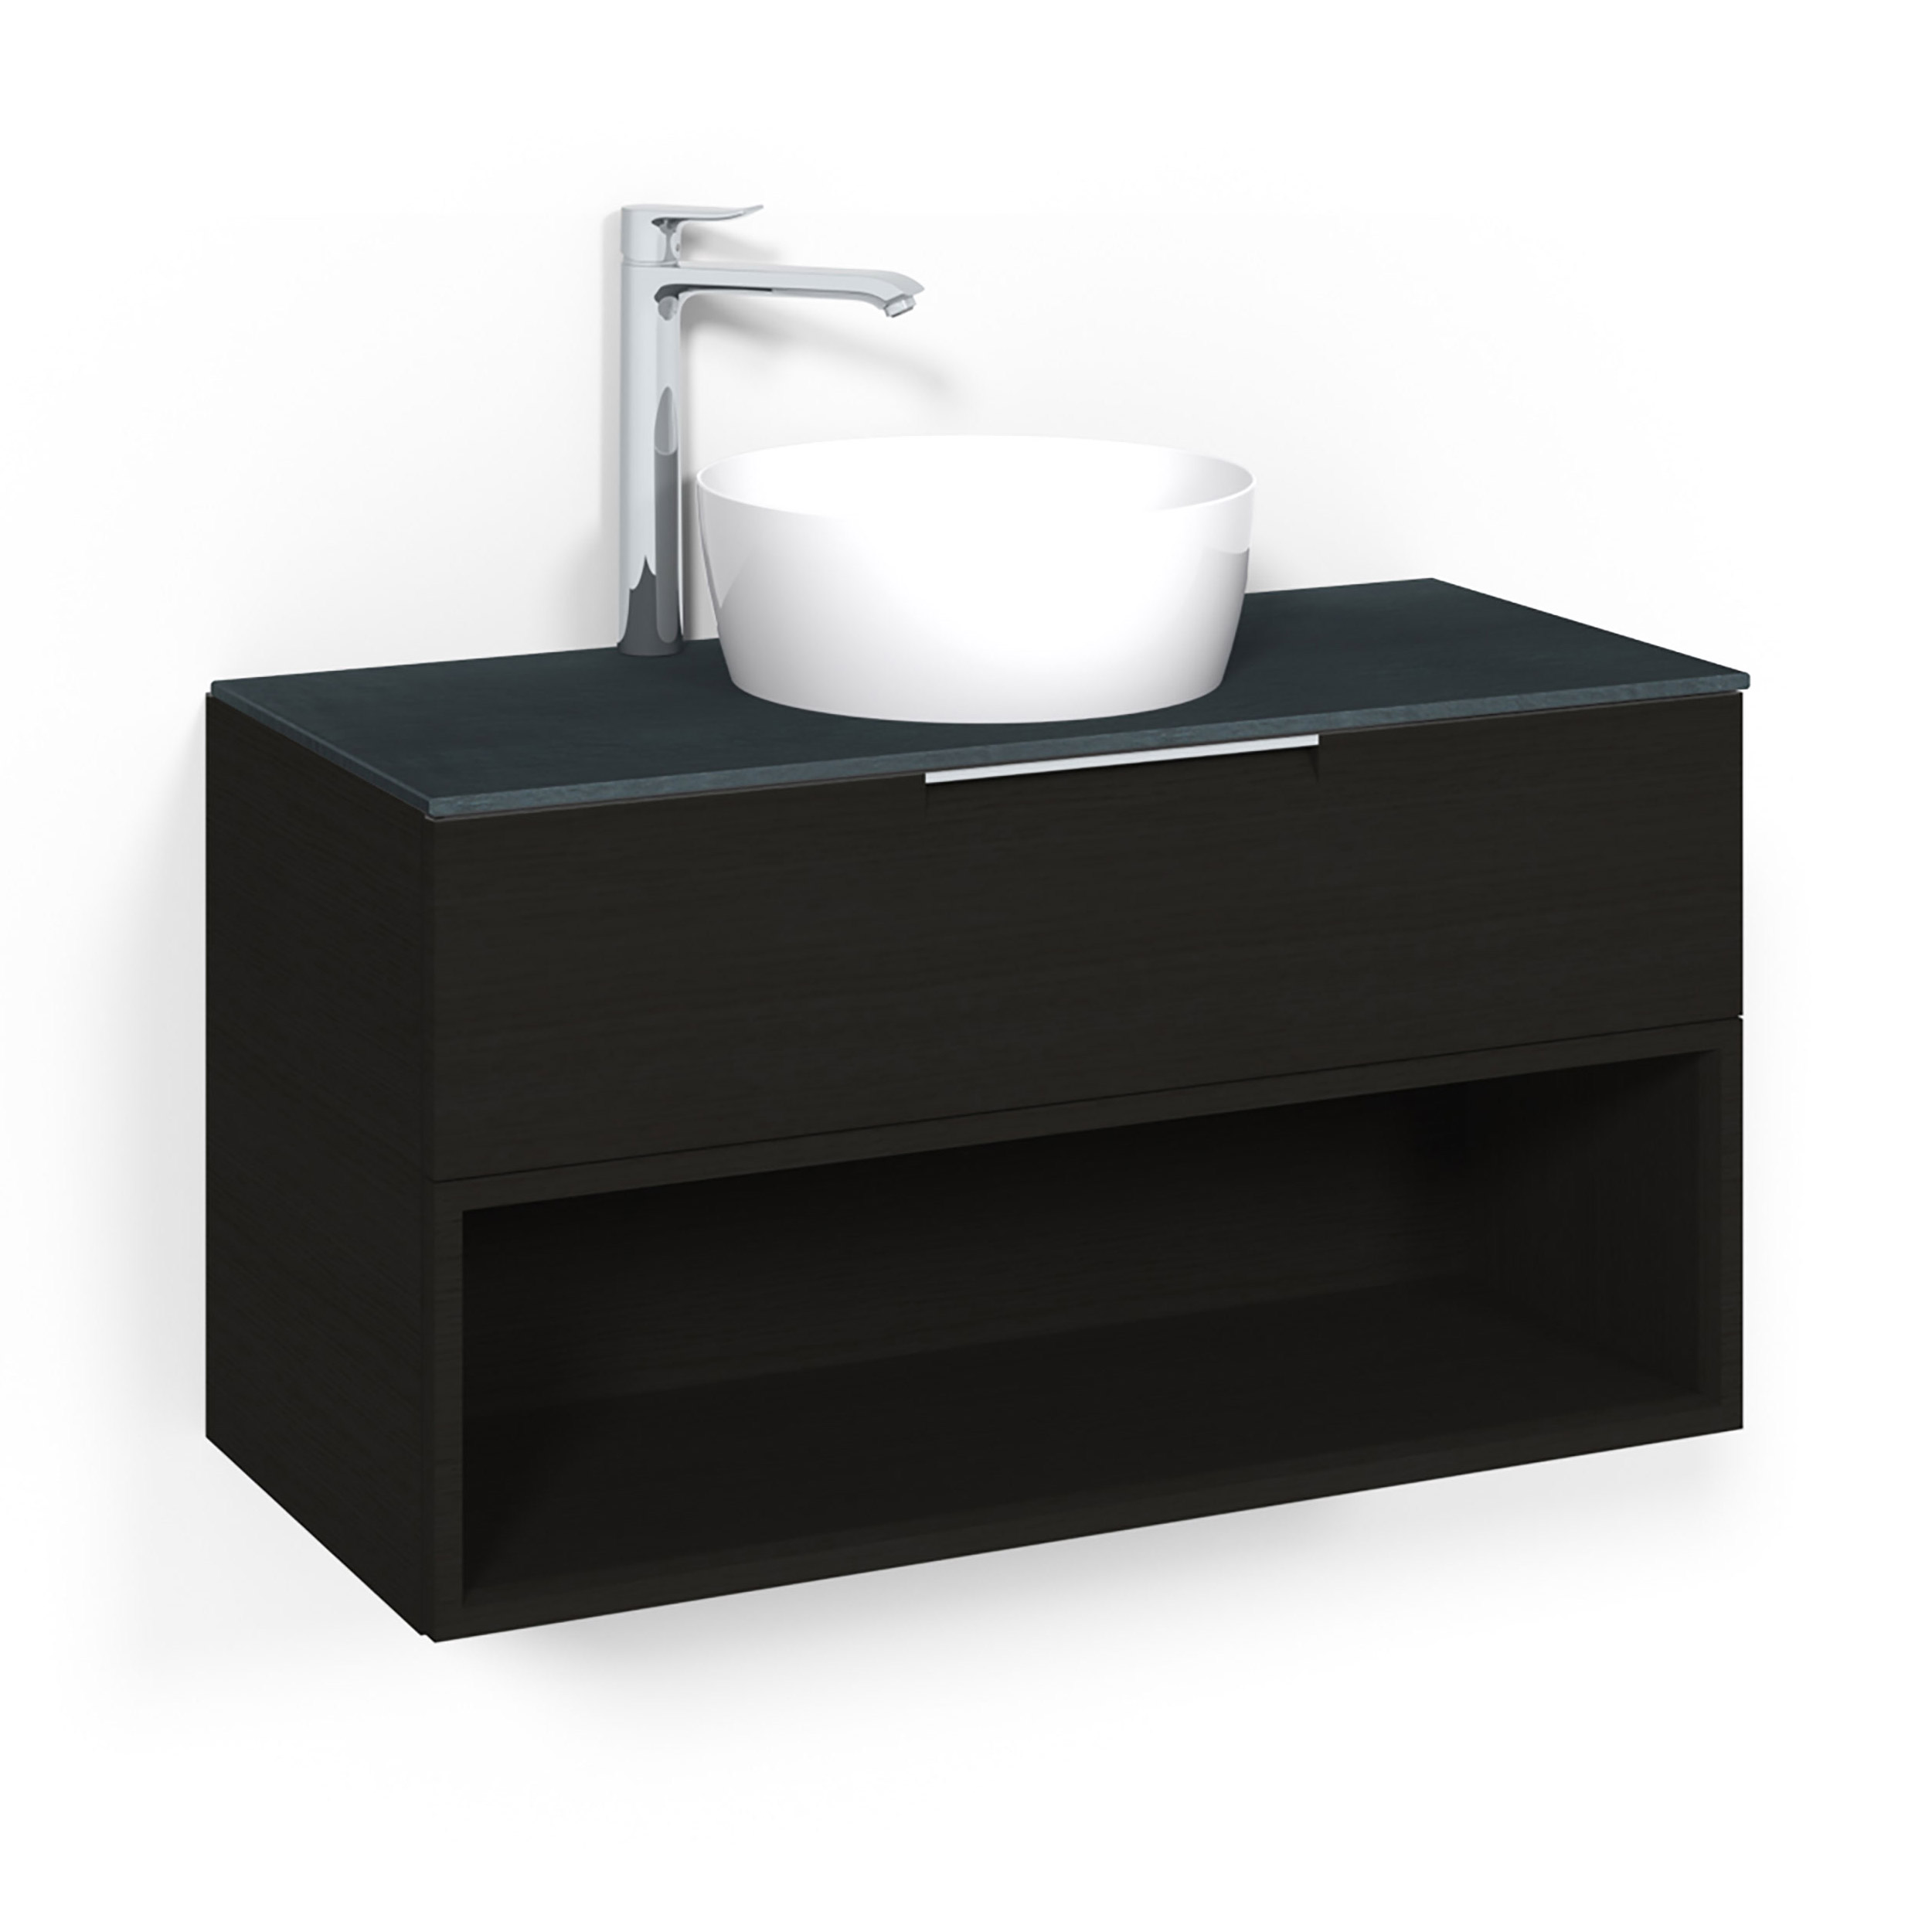 Tvättställsskåp Macro Design Crown Open Box Ovanpåliggande Tvättställ